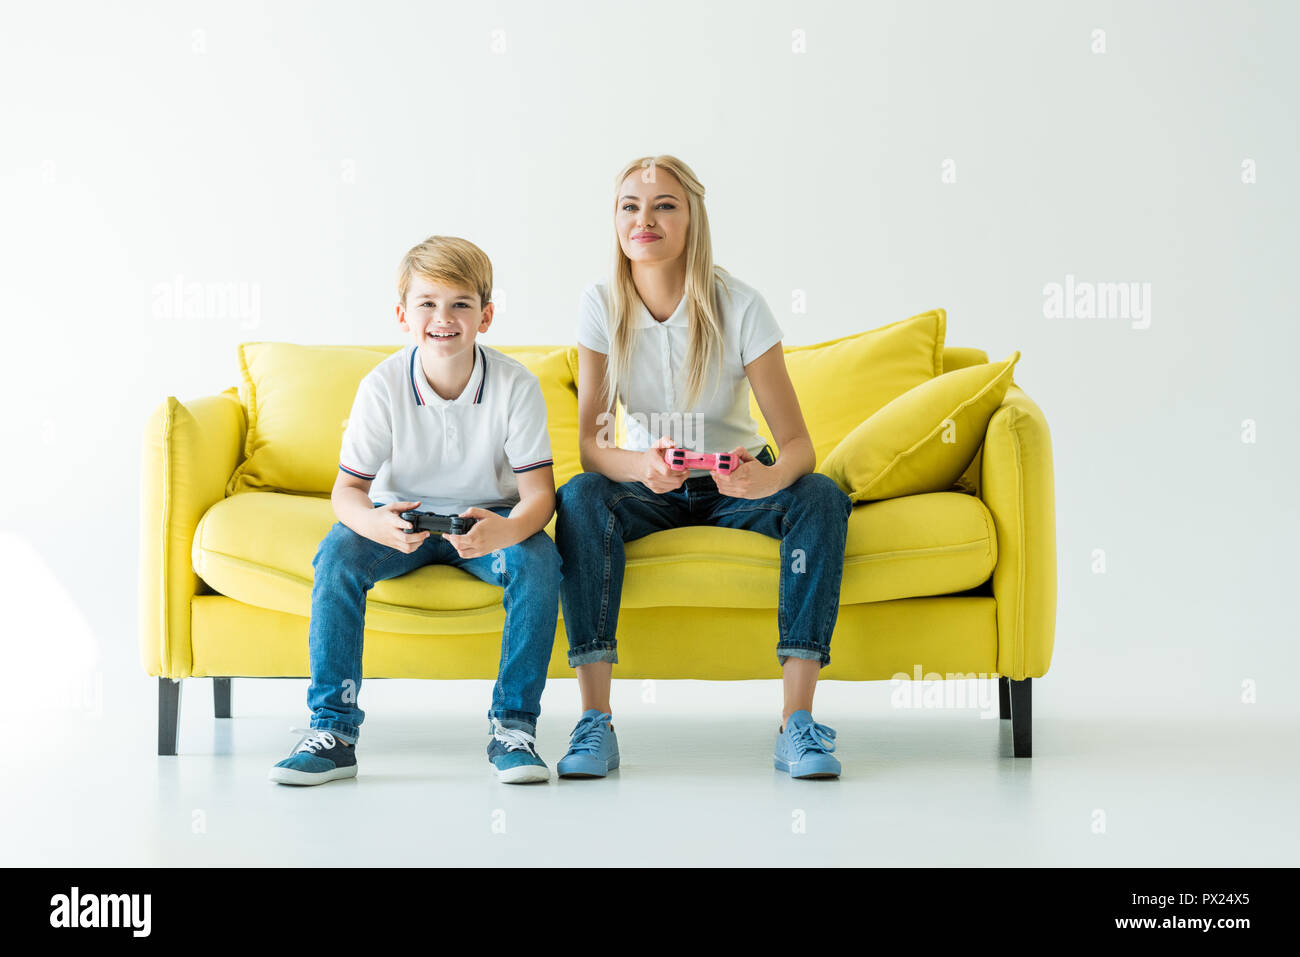 Маму на диване видео. Желтый диван. Семья сидит на желтом диване. Мама на диване. Семья на диване на желтом фоне.